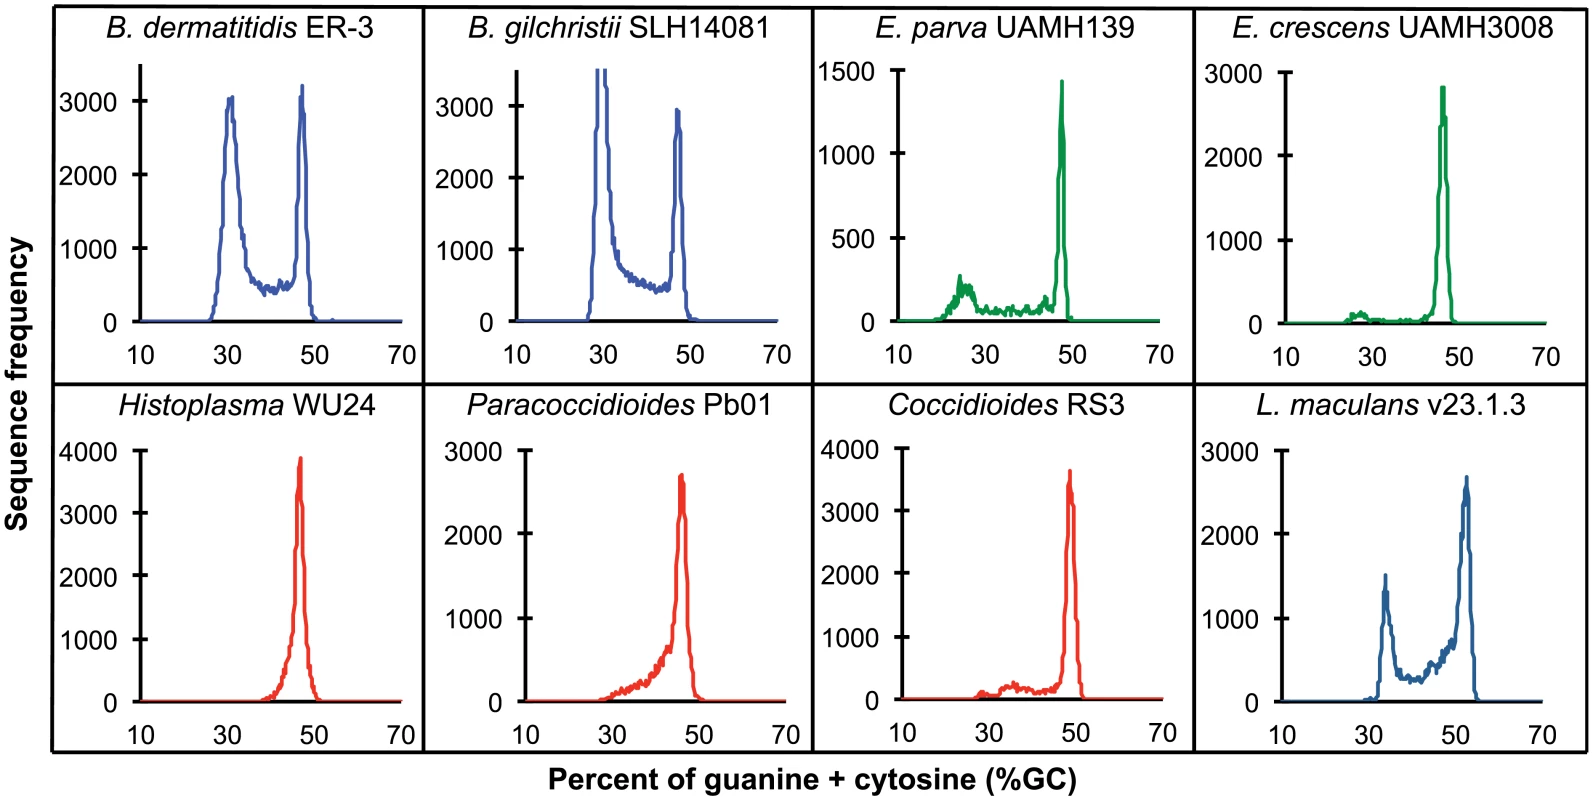 GC frequency distributions (histograms) of overlapping fragments (windows, of 32 kb) of the genome assemblies of <i>Blastomyces dermatitidis</i> ER-3, <i>B</i>. <i>gilchristii</i> SLH14081, <i>Emmonsia parva</i> (UAMH139), <i>E</i>. <i>crescens</i> (UAMH3008), <i>Histoplasma capsulatum</i> (WU24), <i>Paracoccidioides lutzii</i> (Pb01), <i>Coccidioides immitis</i> (RS3), and <i>Leptosphaeria maculans</i> (v23.1.3).